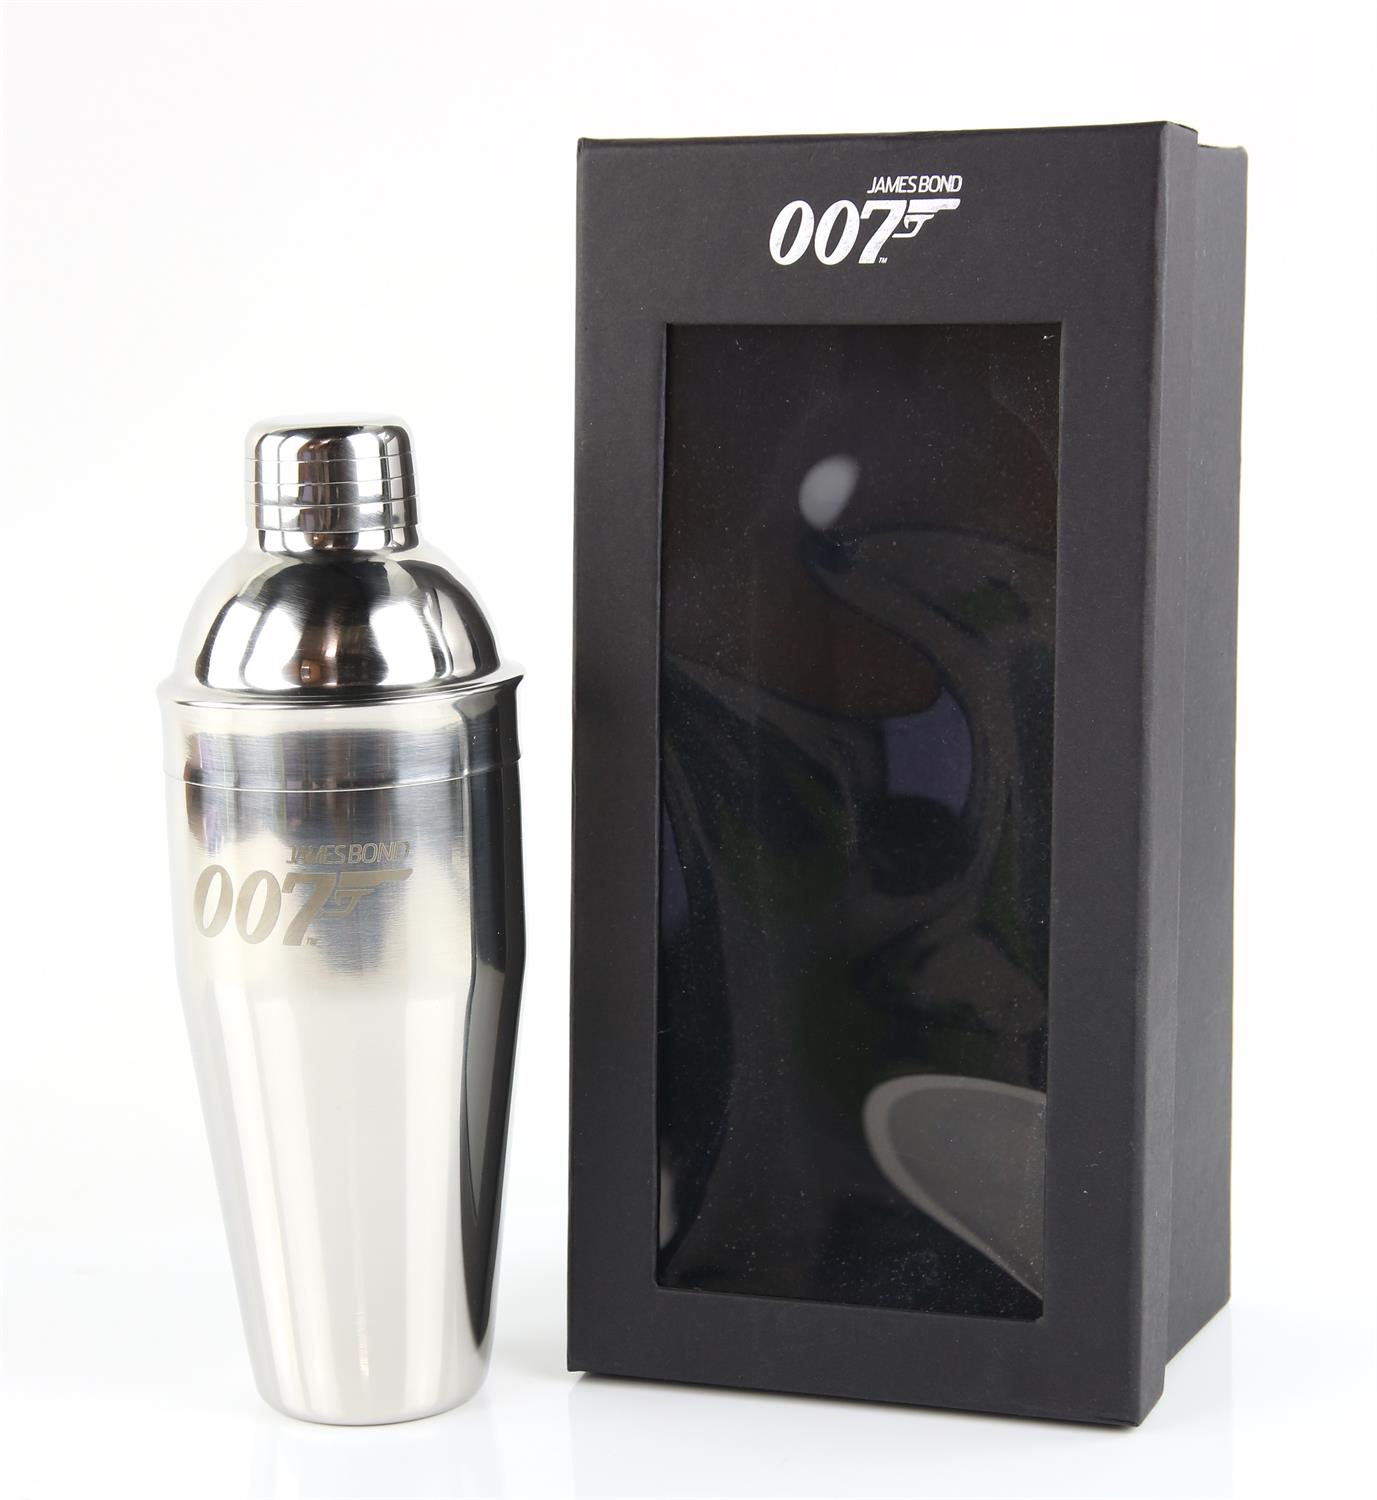 James Bond 007 - Commemorative cocktail shaker, in original box.